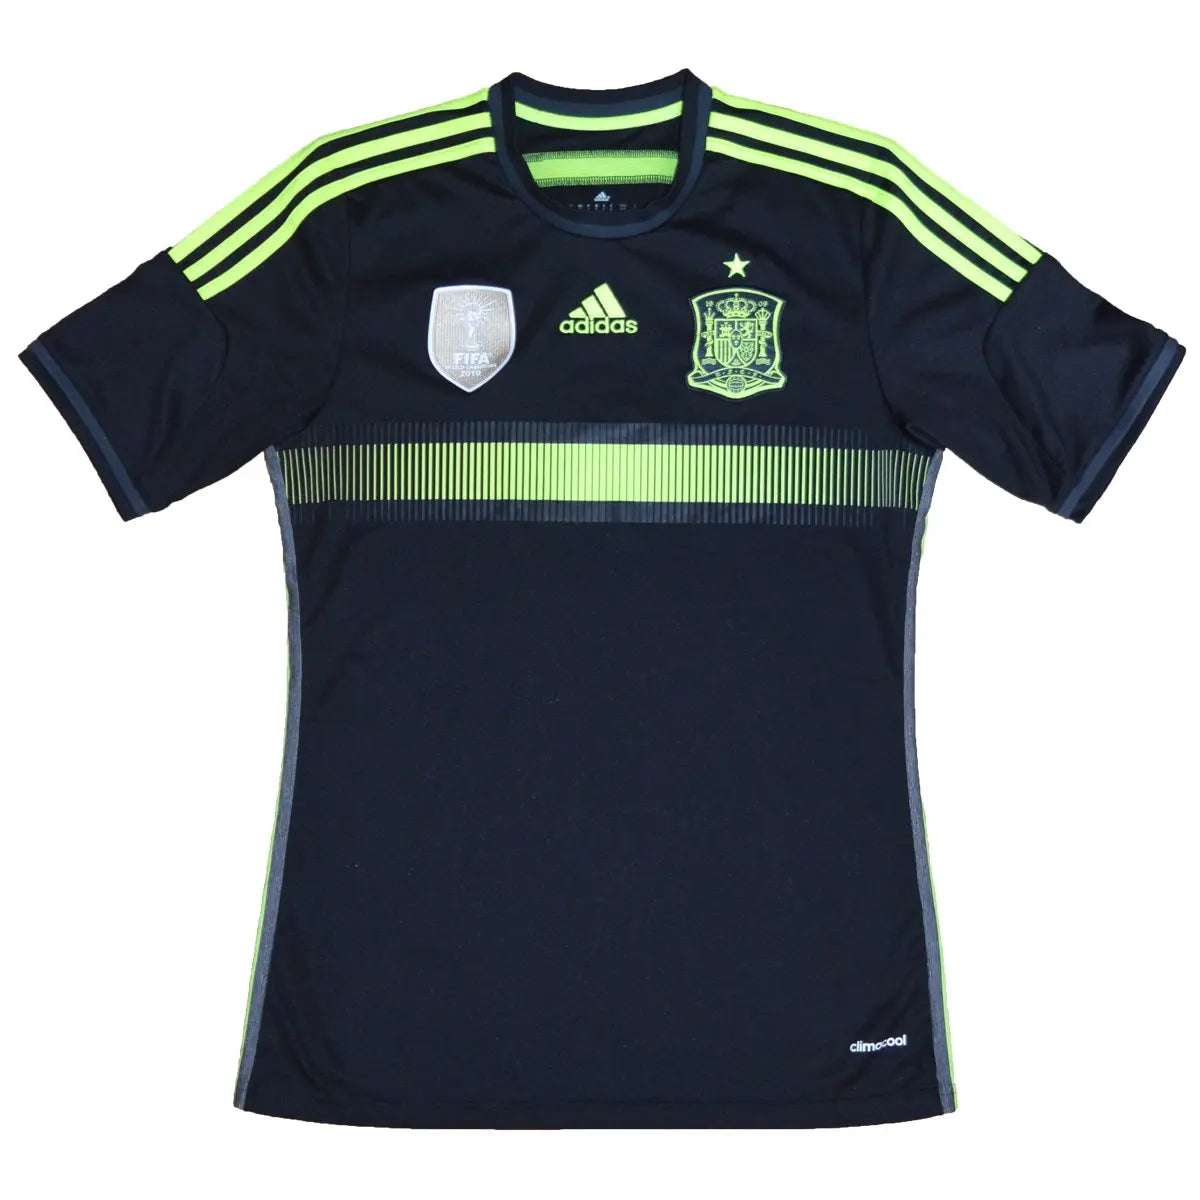 maillot extérieur retro/vintage authentique espagne, noir et jaune, utilisé lors de la coupe du monde 2014